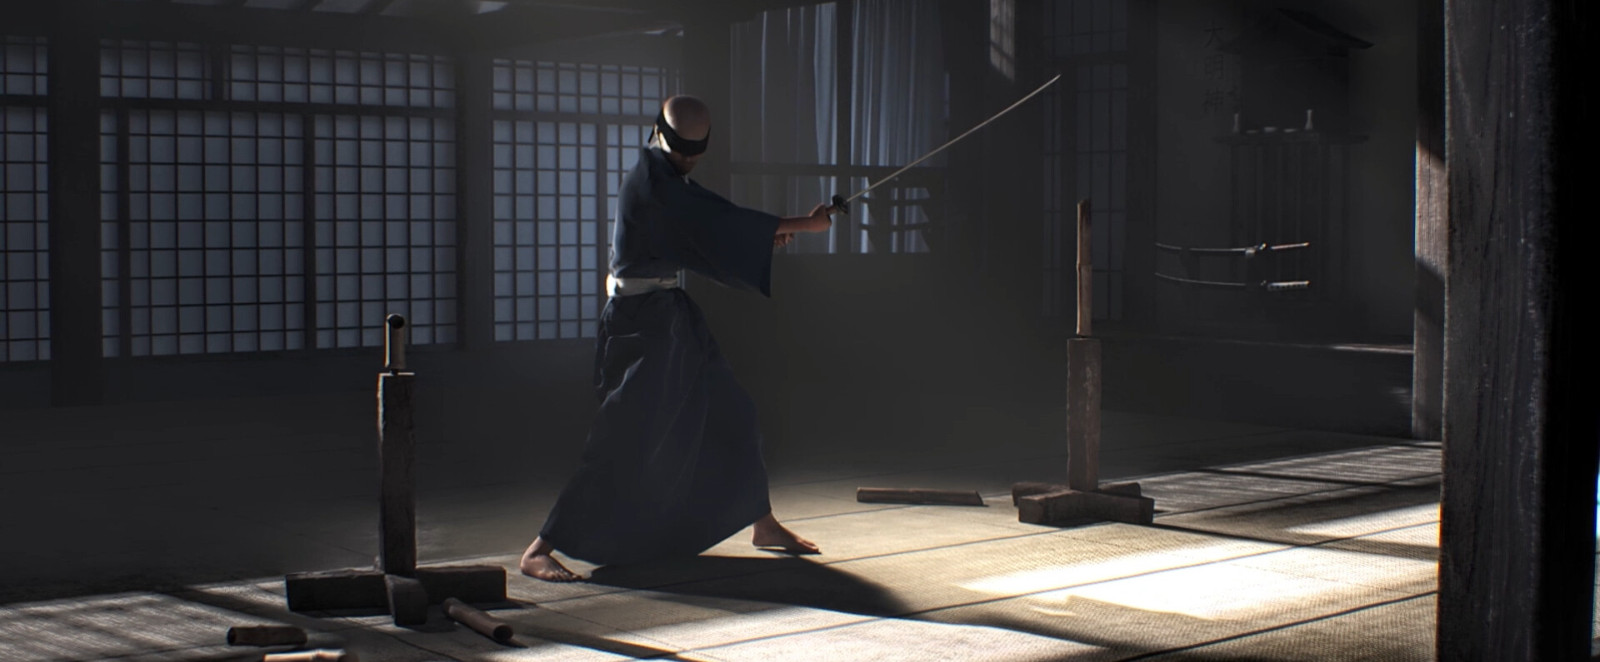 武士剑格斗模拟器《Kendo Warrior》Steam页面上线 支持简体中文